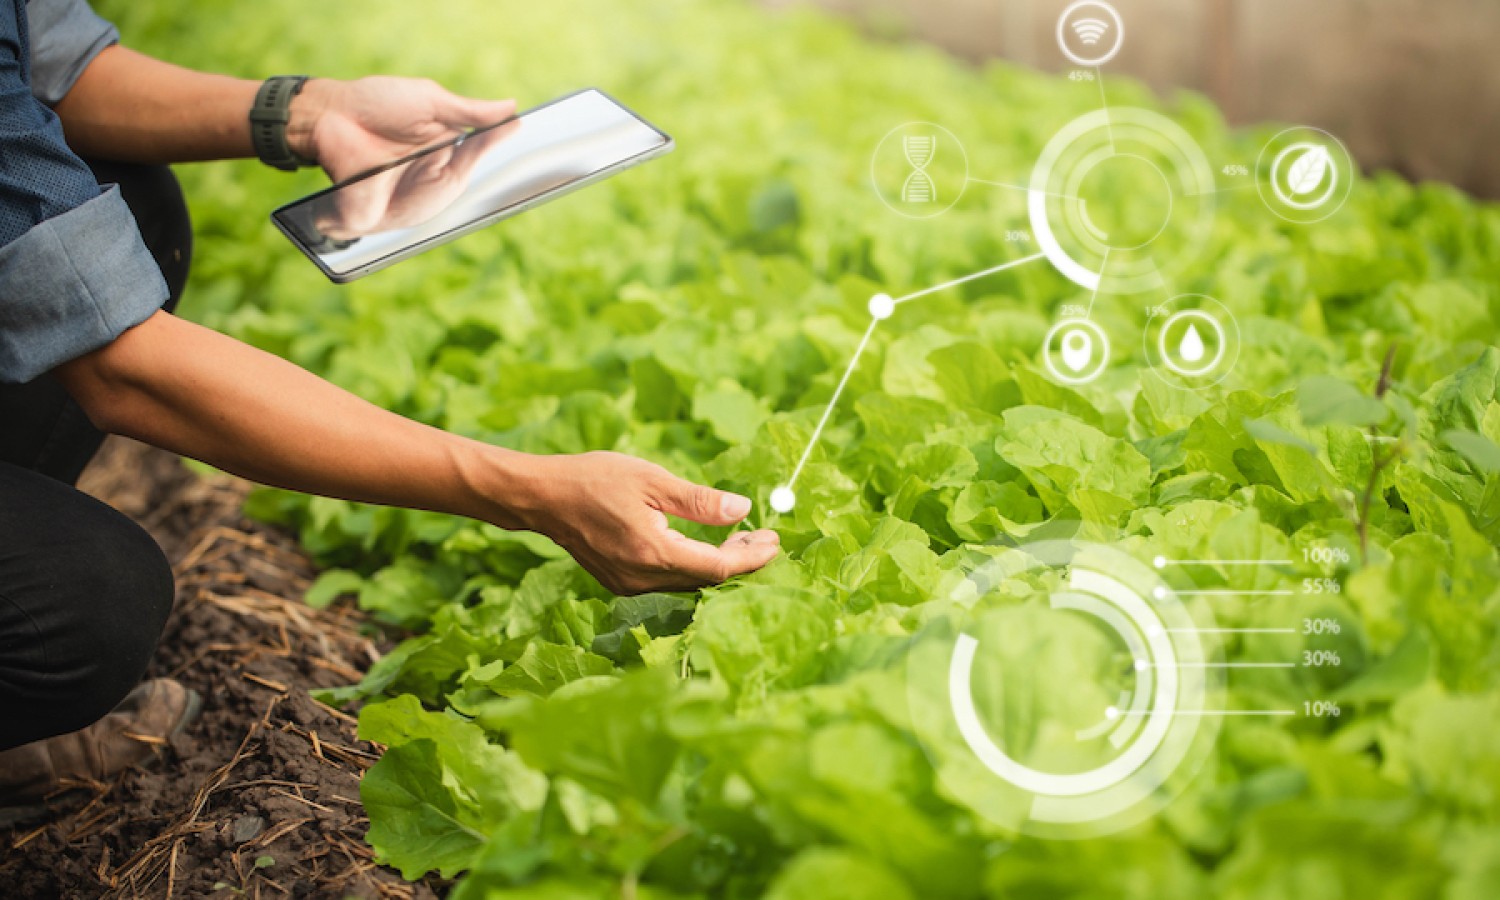 L’innovazione digitale a supporto della qualità alimentare e della sostenibilità